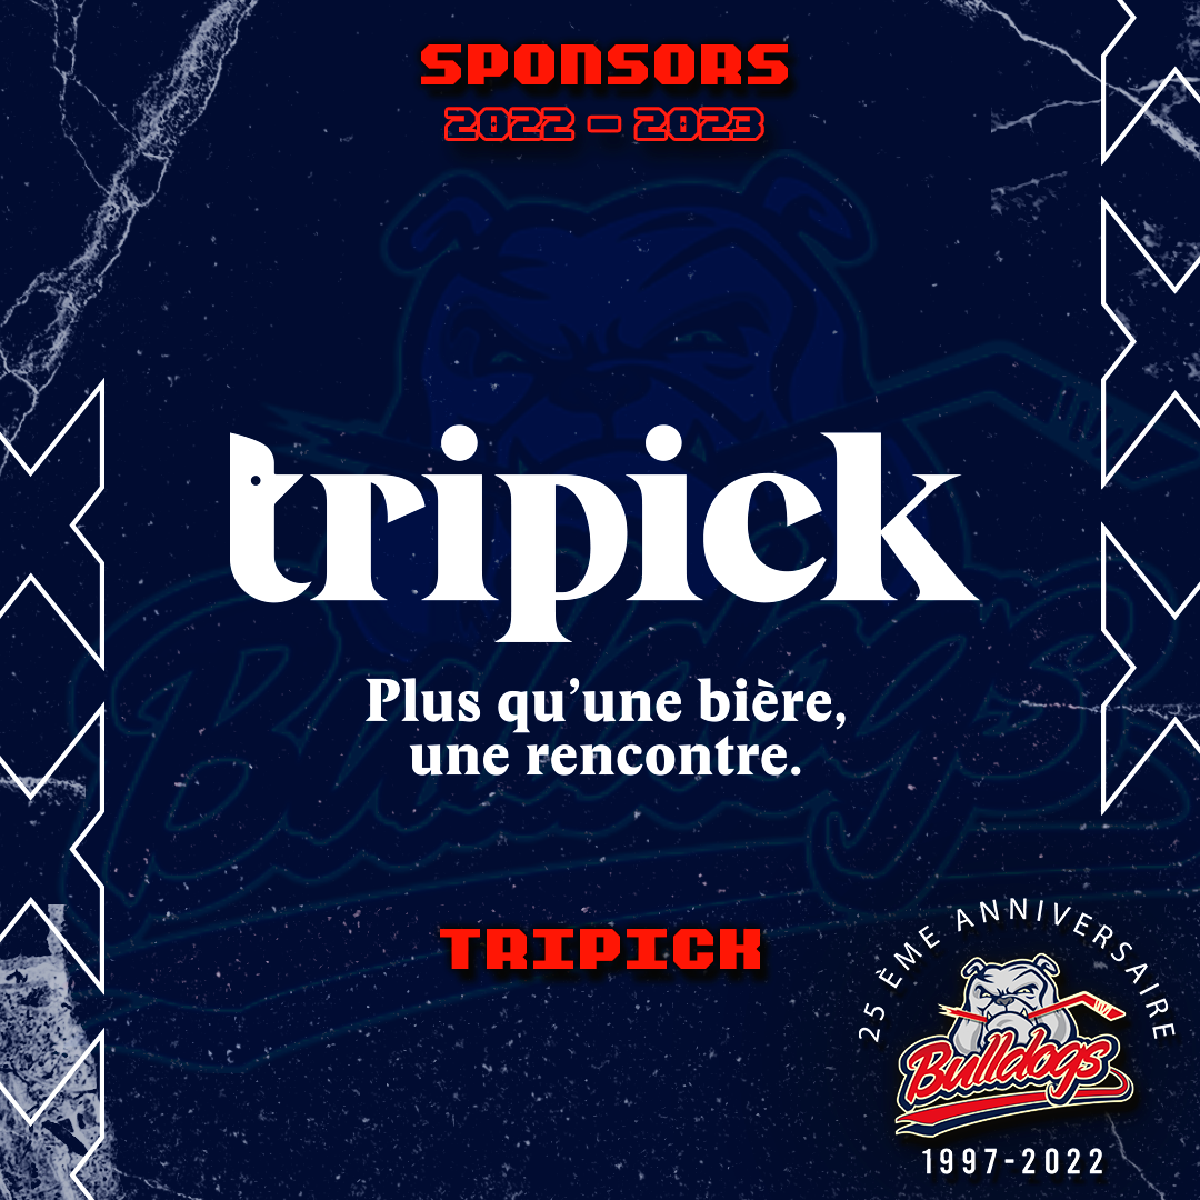 TRIPICK - NOUVEAU SPONSOR DES BULLDOGS DE LIEGE 2022-2023